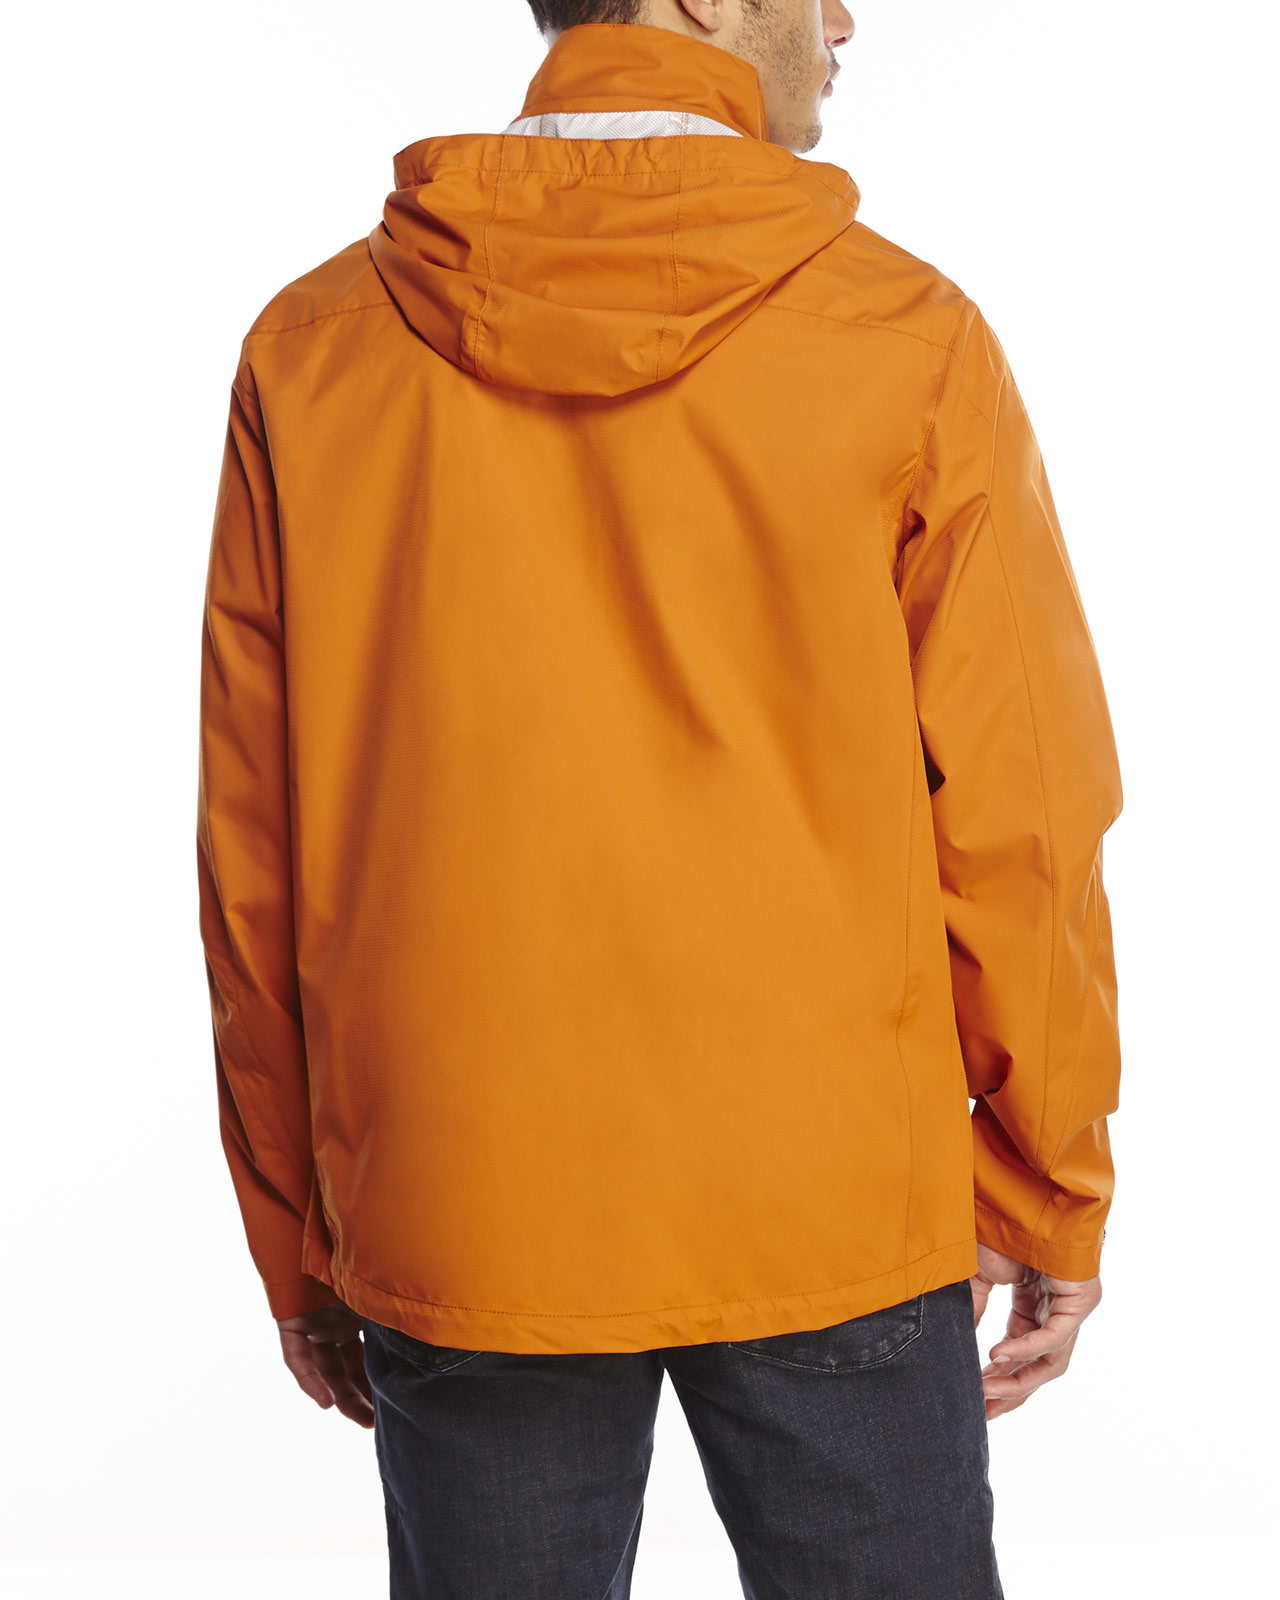 Hawke & Co. Synthetic Waterproof Hooded Jacket in Orange for Men - Lyst